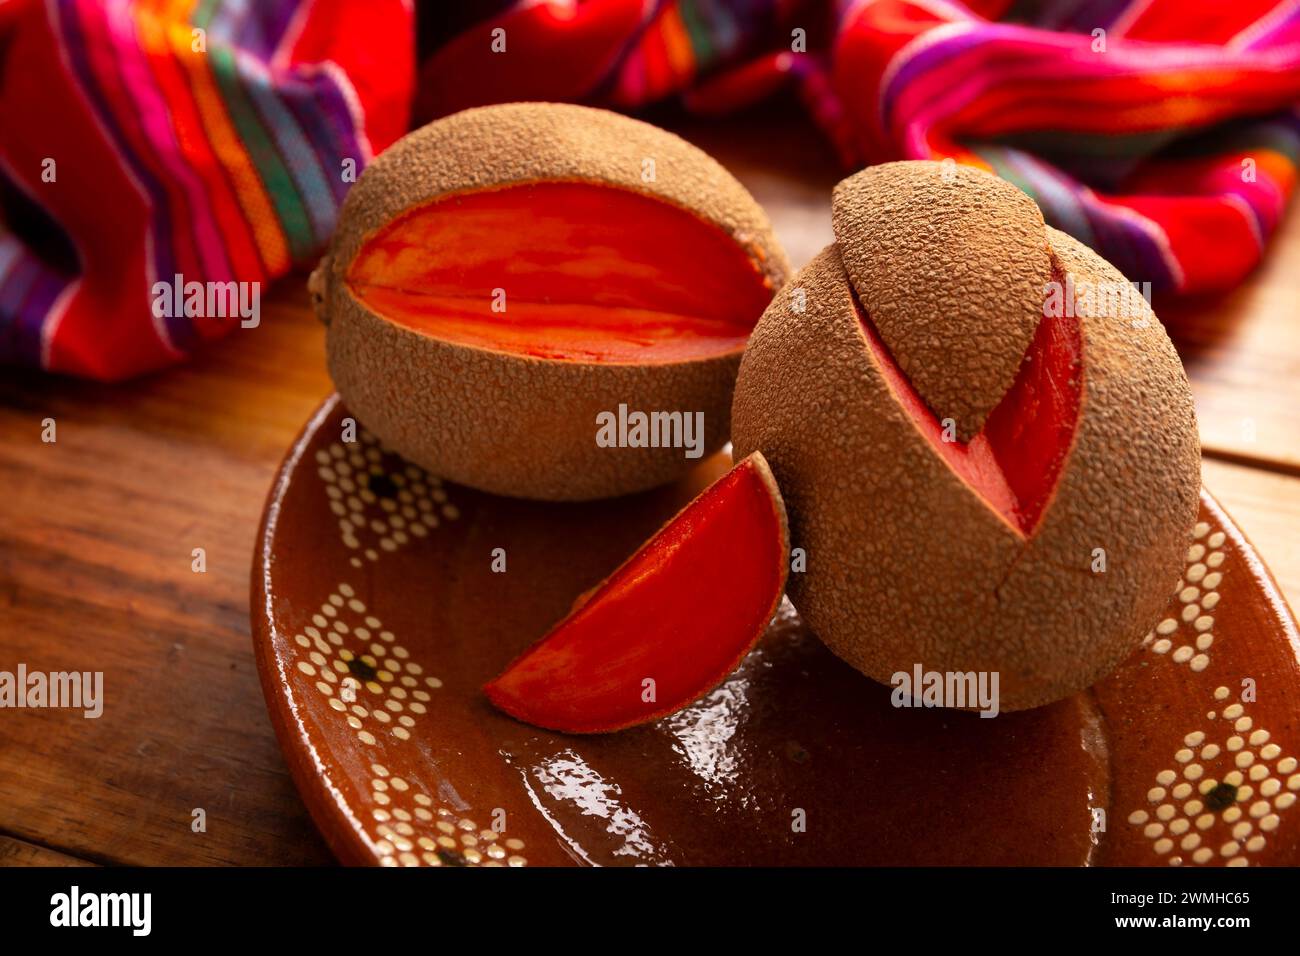 Mamey, (Pouteria sapota) frutto originario del Messico e di altri paesi americani, in alcuni paesi è conosciuto come Zapote, Sapote o Mamey rosso. Foto Stock